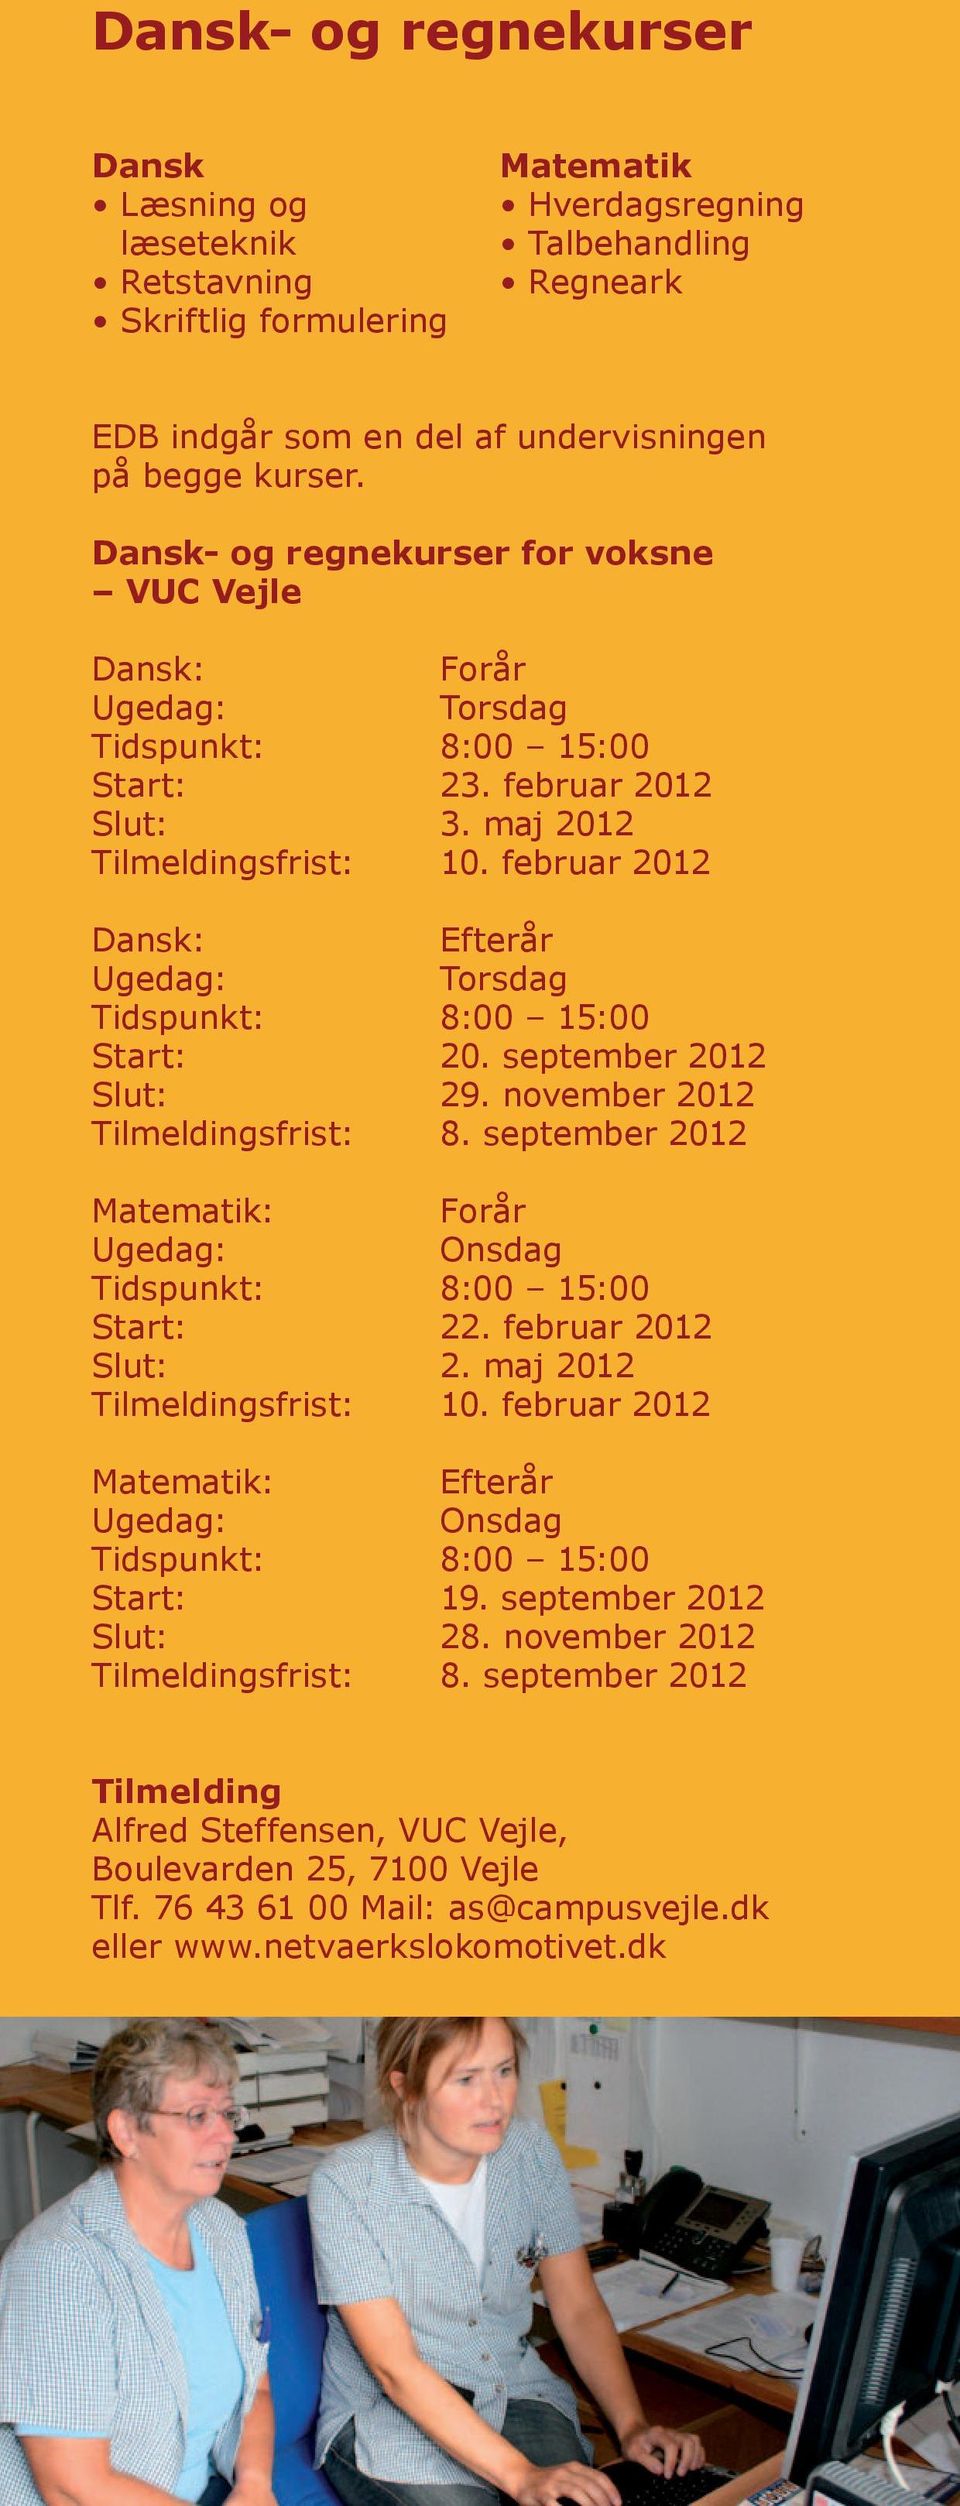 februar 2012 Dansk: Efterår Tidspunkt: 8:00 15:00 Start: 20. september 2012 Slut: 29. november 2012 Tilmeldingsfrist: 8. september 2012 Matematik: Forår Tidspunkt: 8:00 15:00 Start: 22.